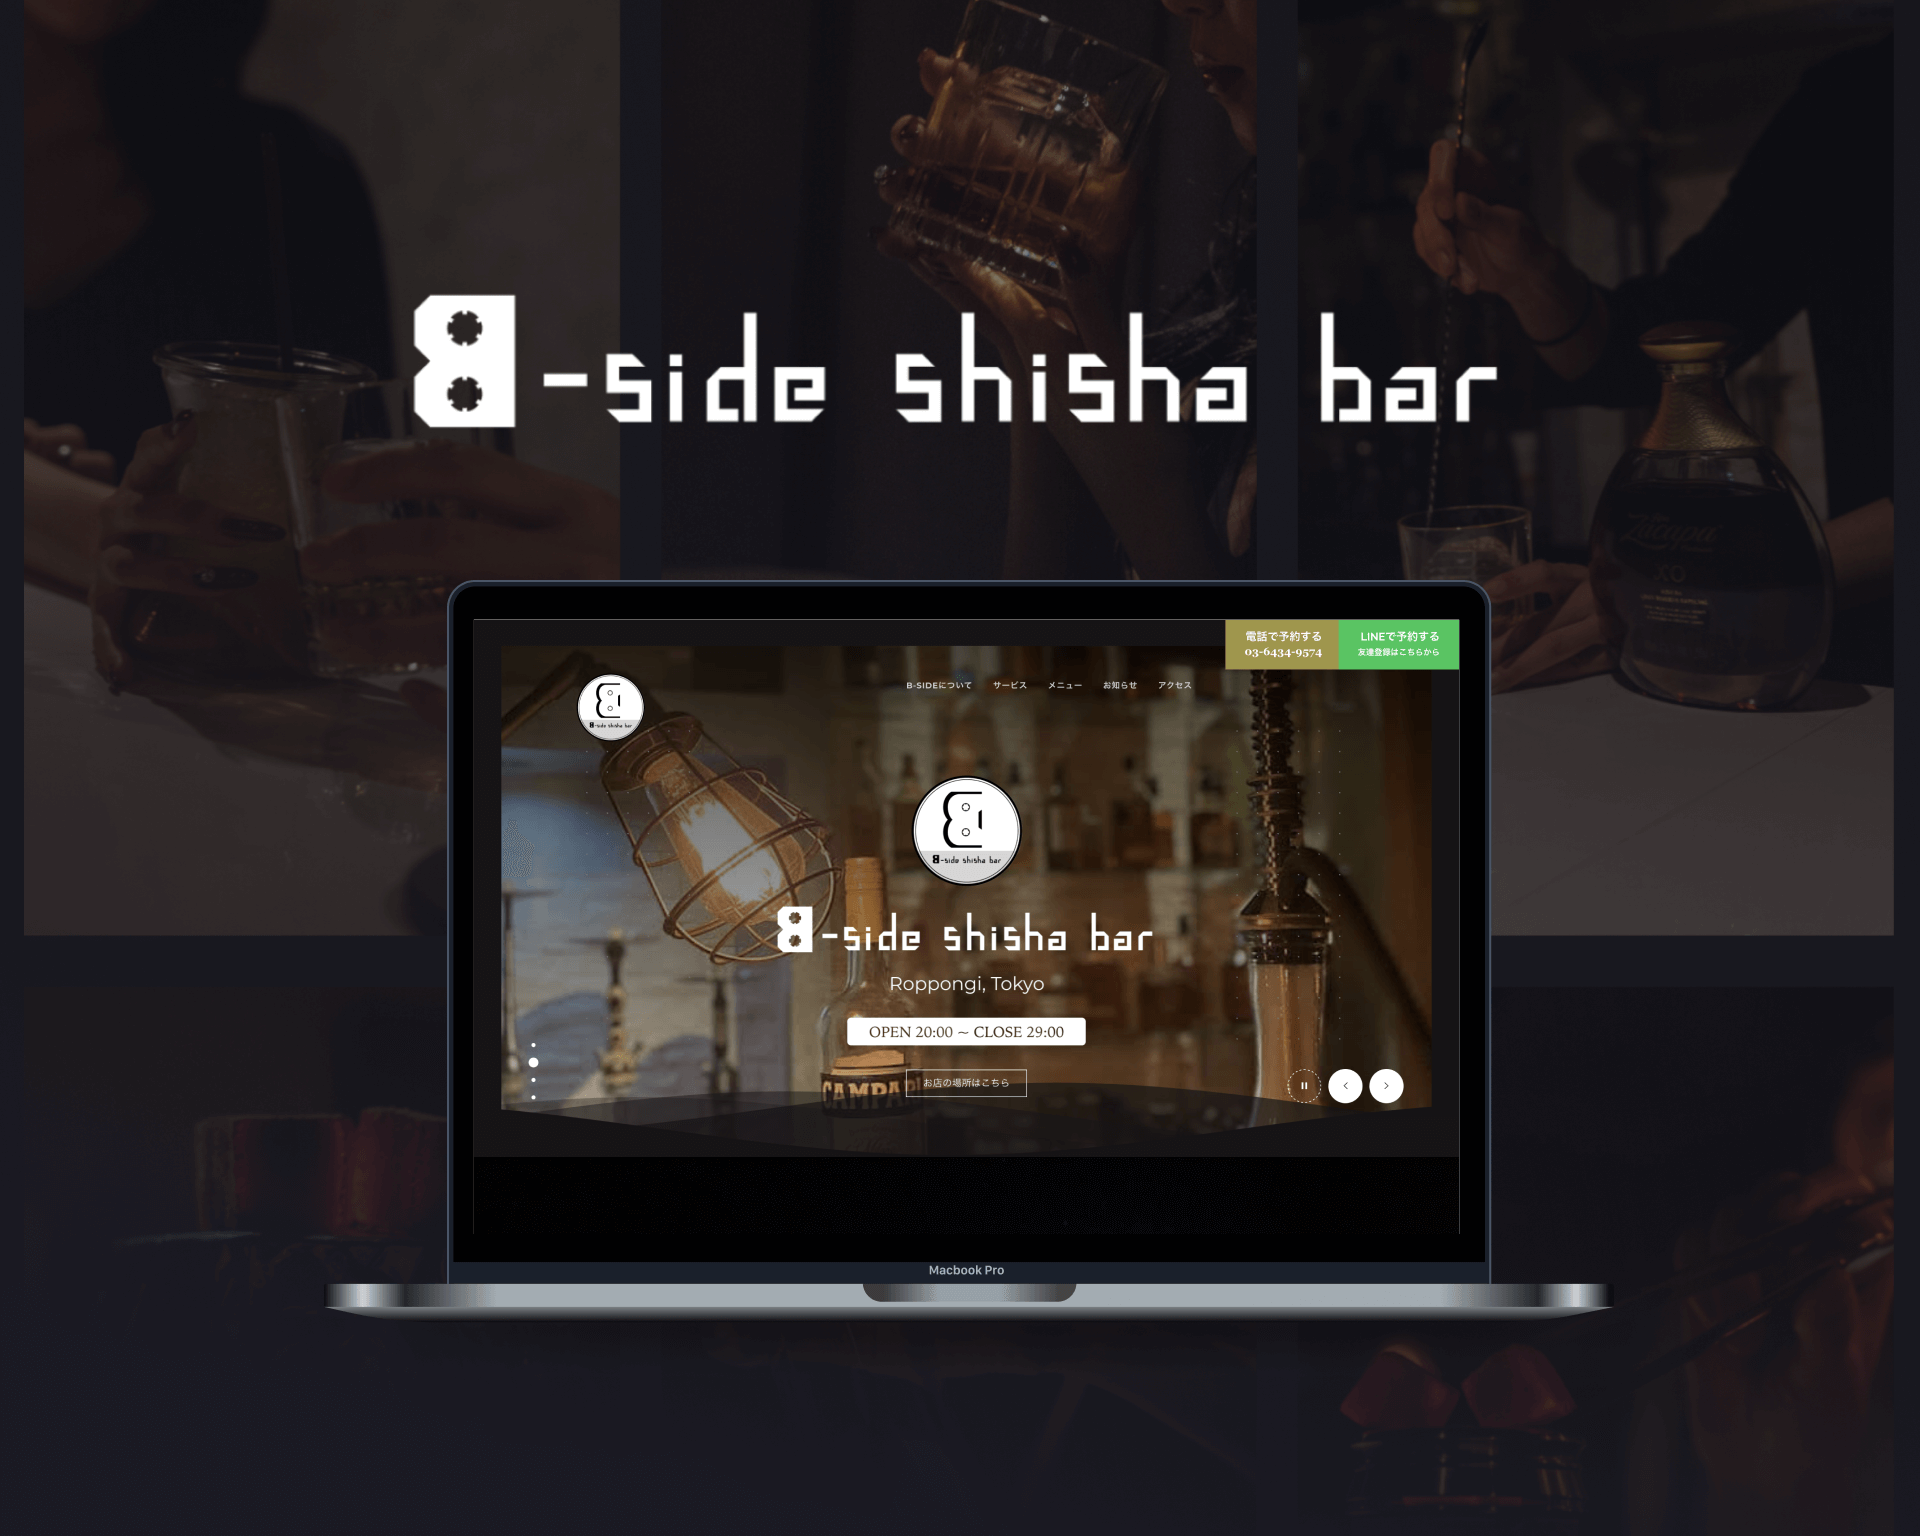 B-side shisha bar